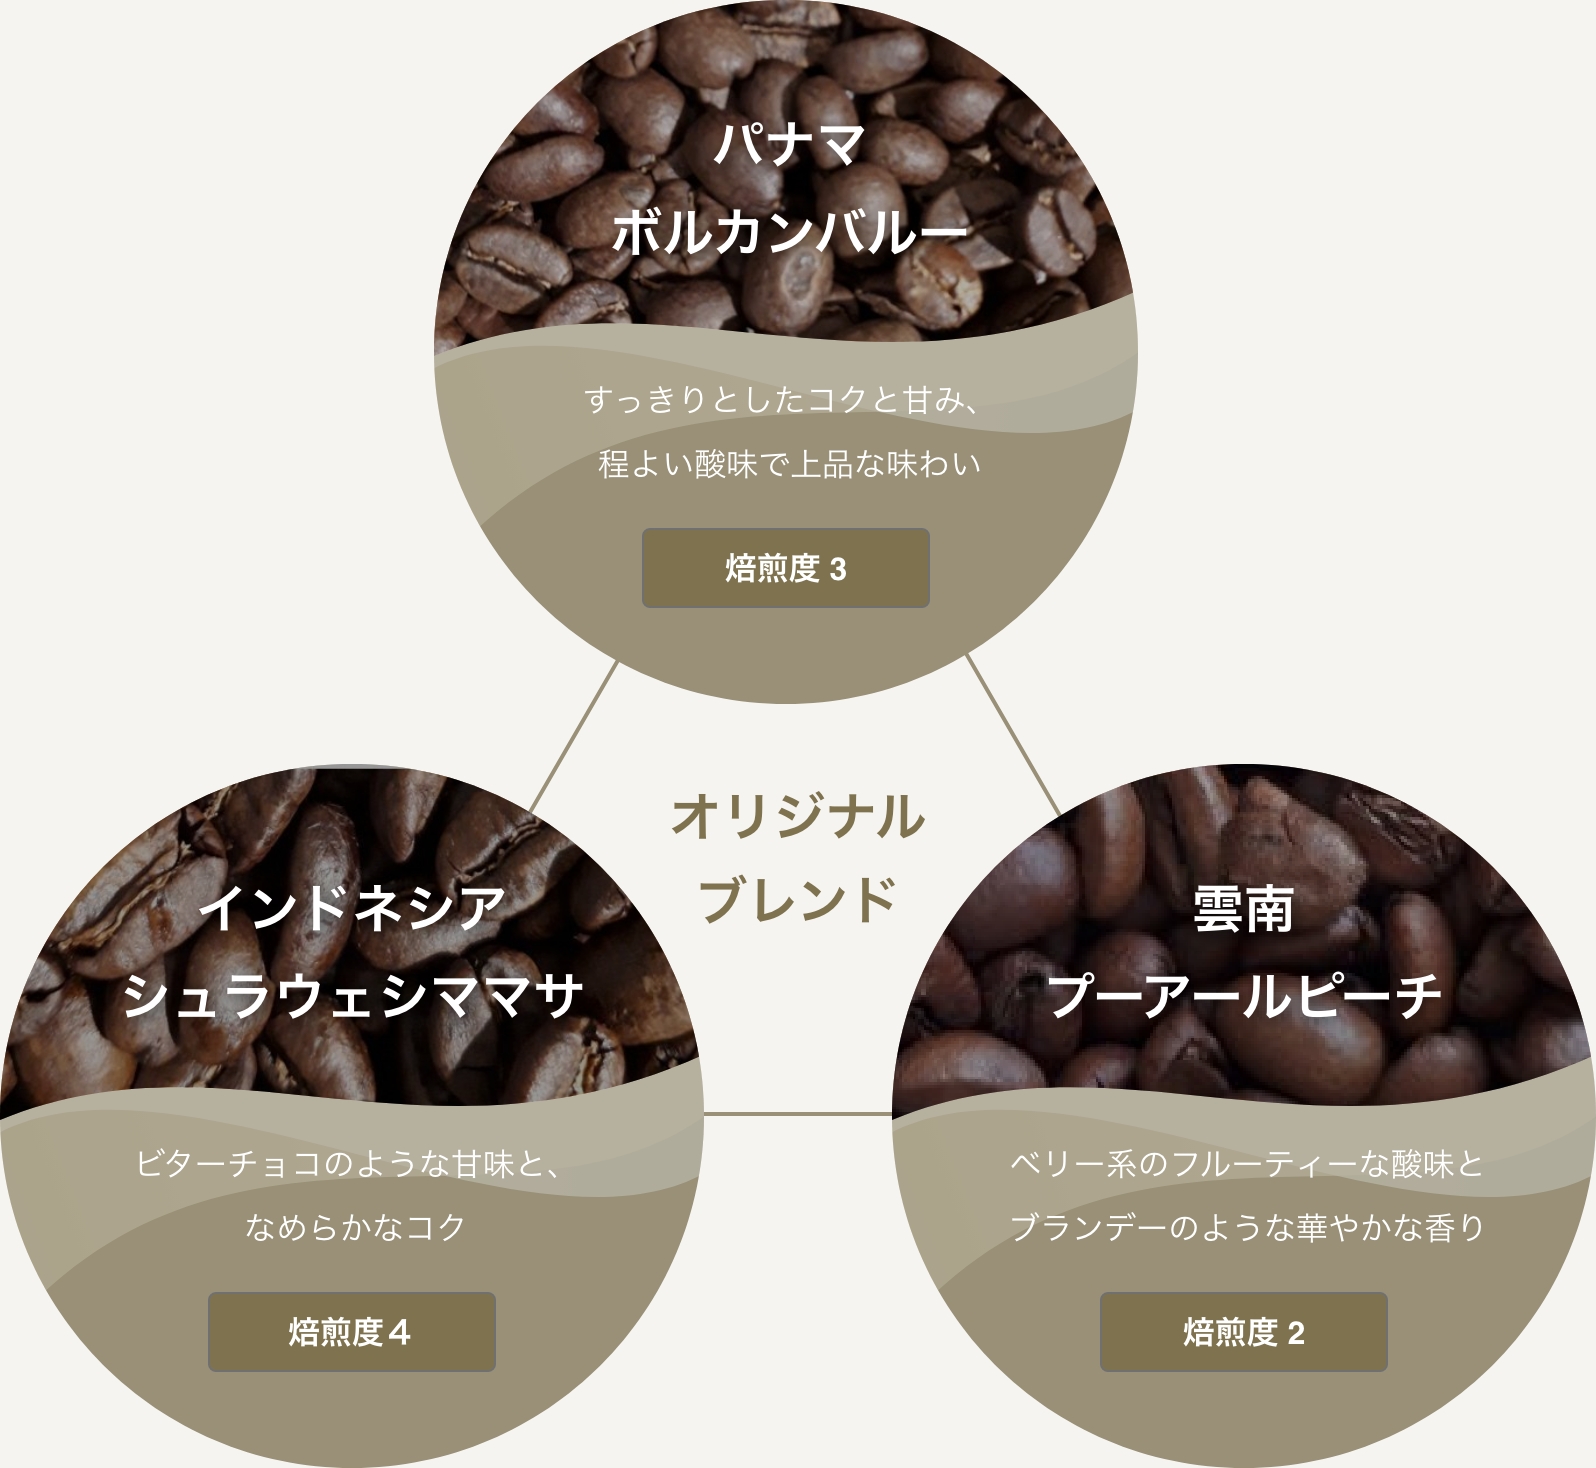 3種類のコーヒーから作り出すオリジナルブレンド